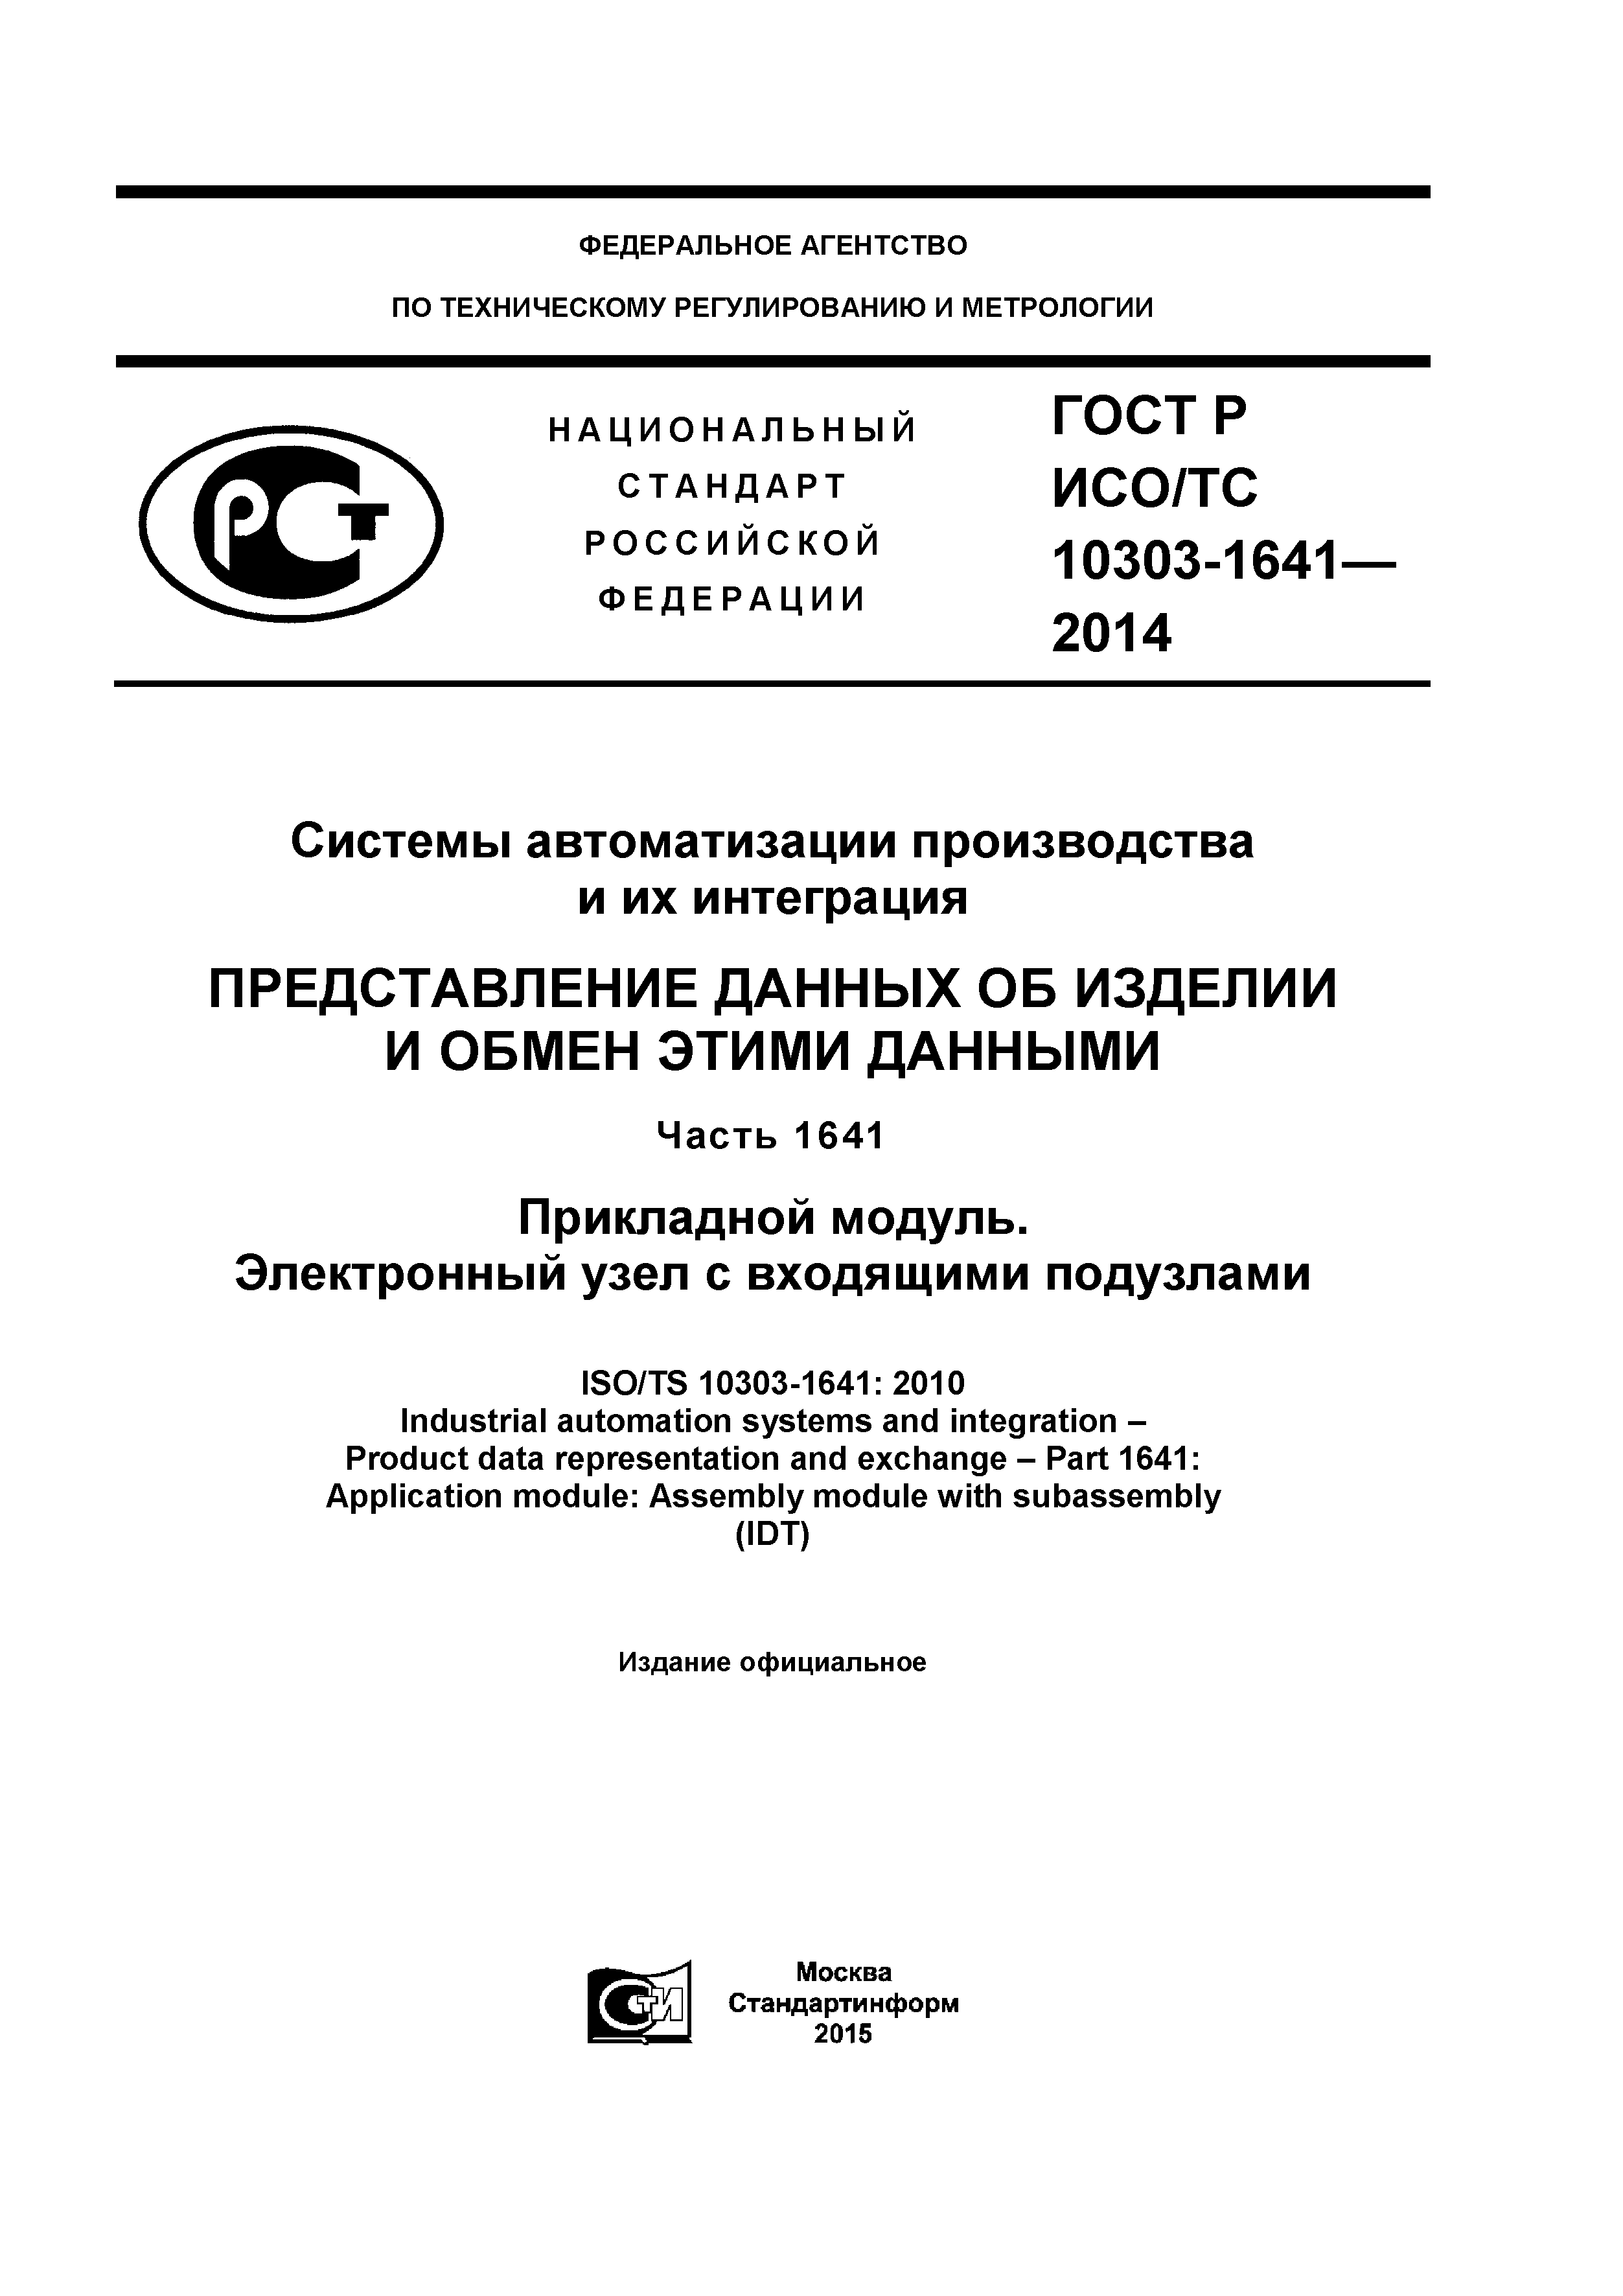 ГОСТ Р ИСО/ТС 10303-1641-2014